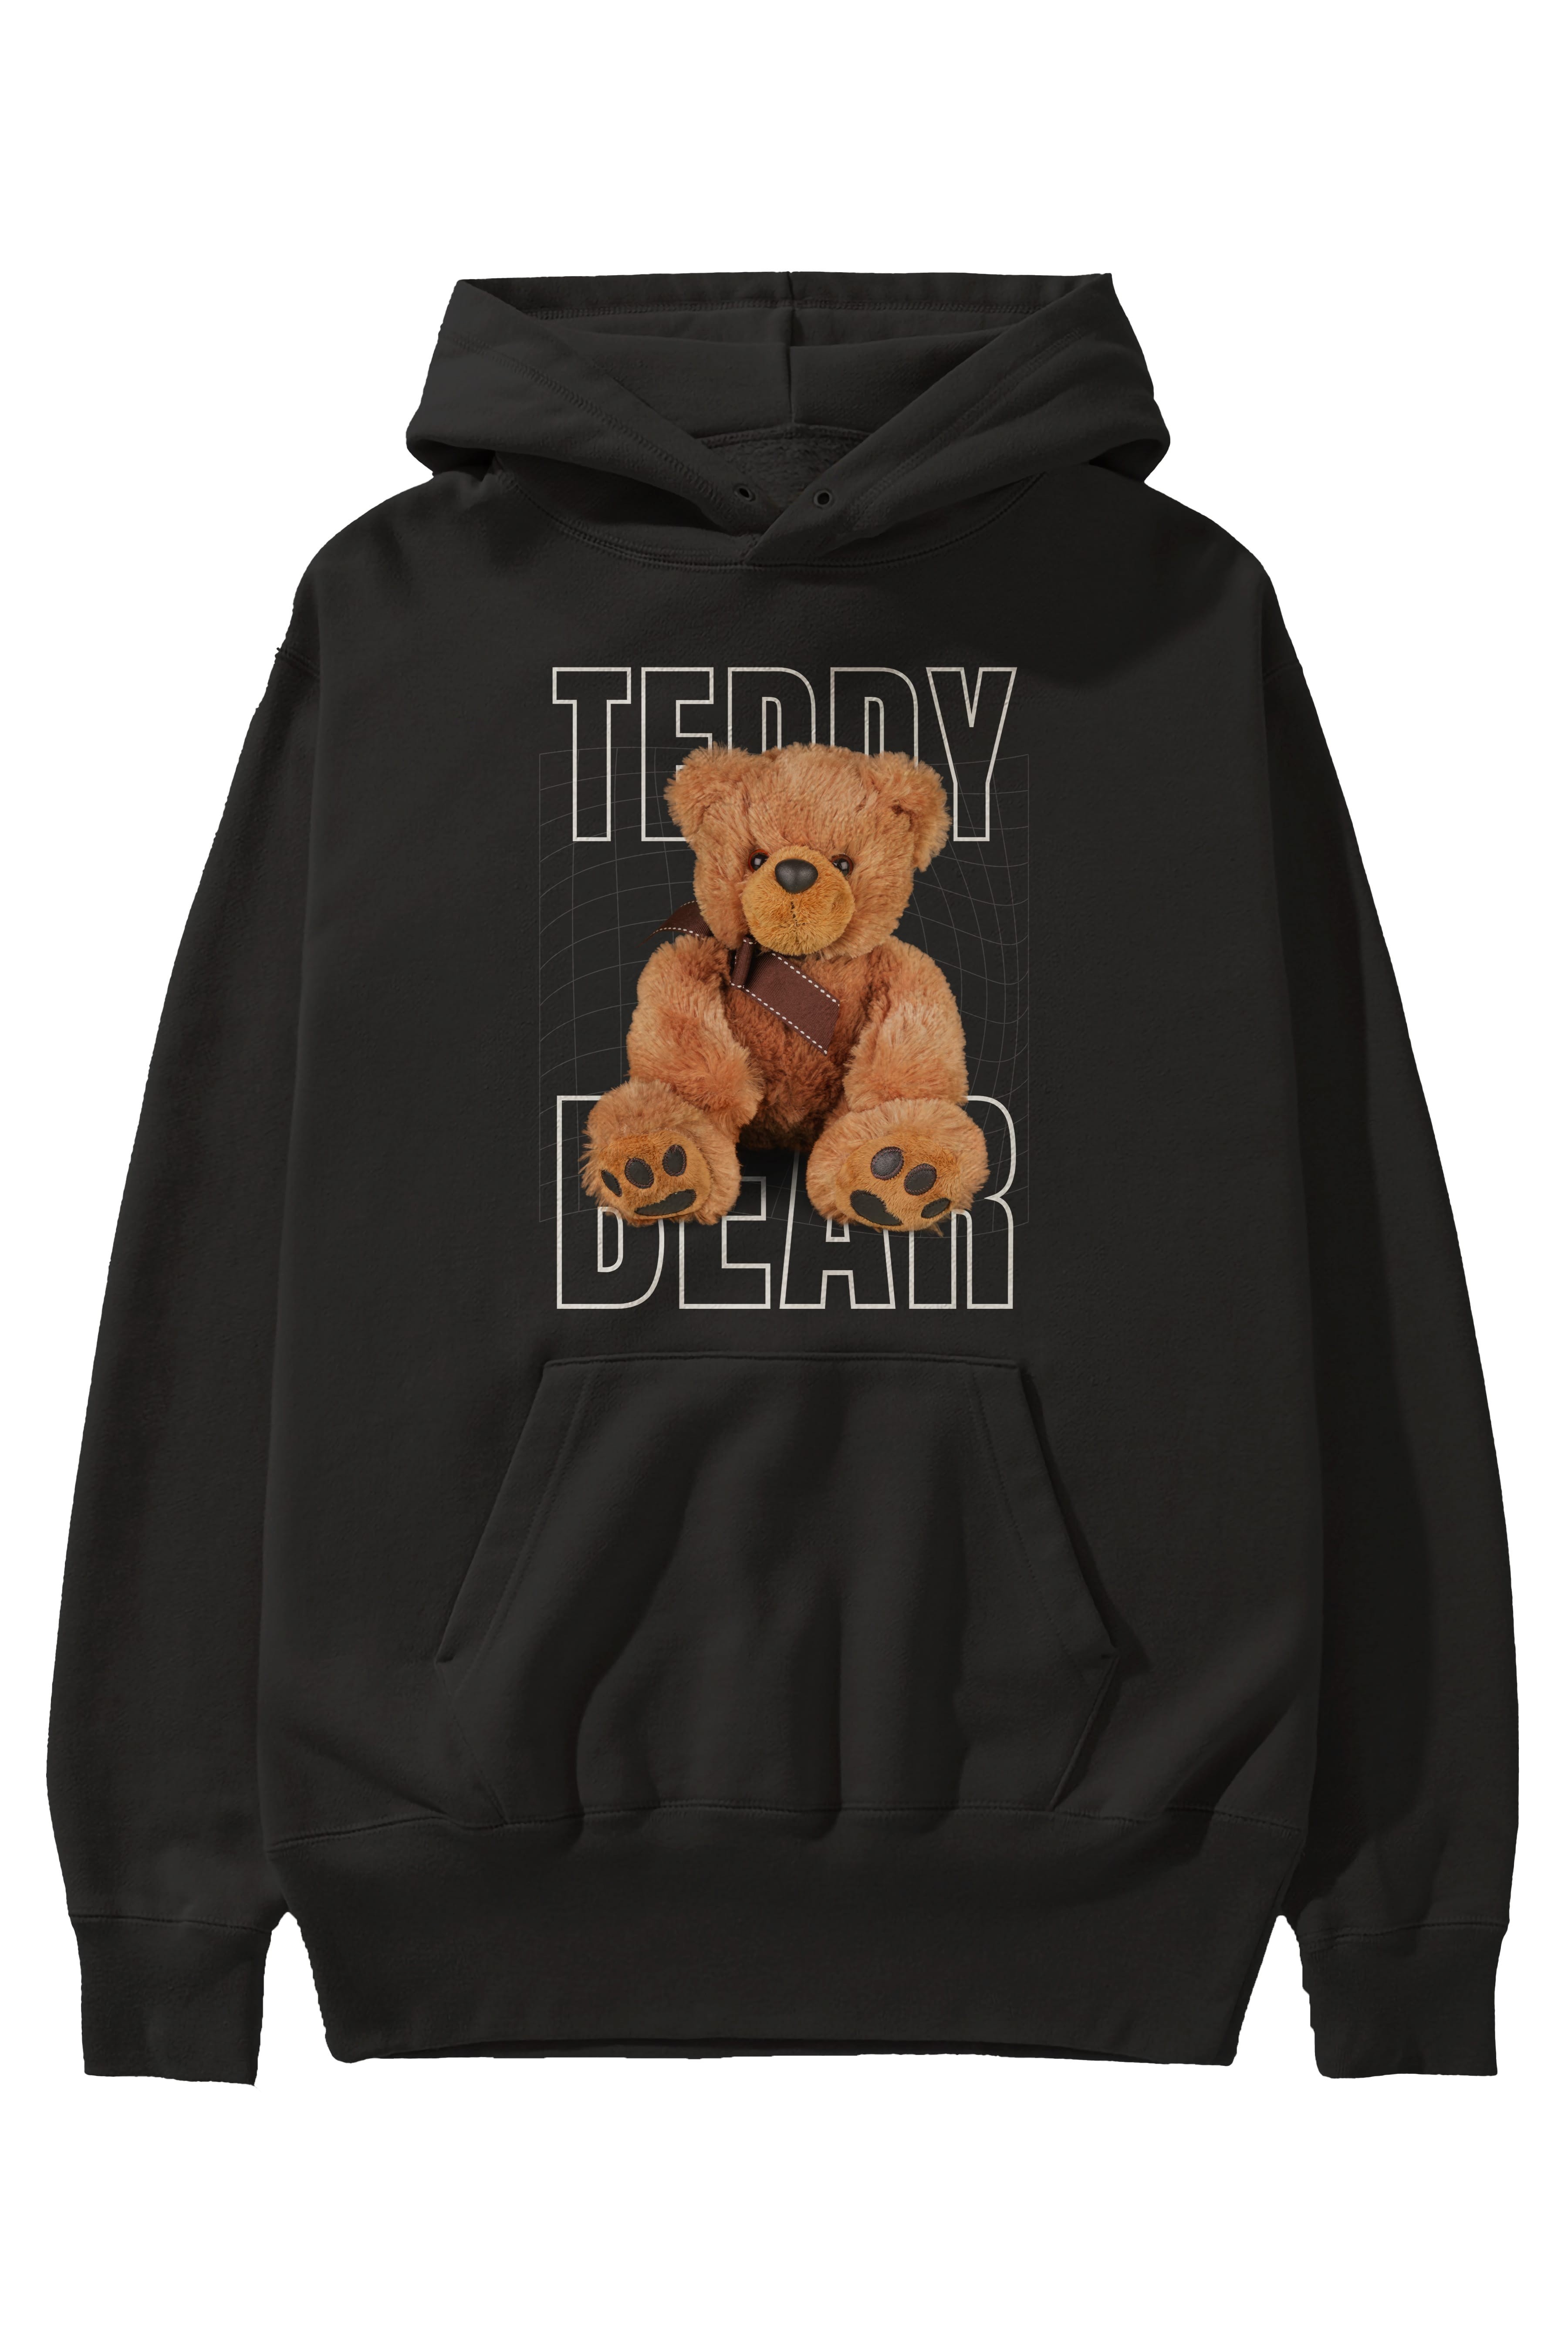 Teddy Bear Yazılı Ön Baskılı Oversize Hoodie Kapüşonlu Sweatshirt Erkek Kadın Unisex